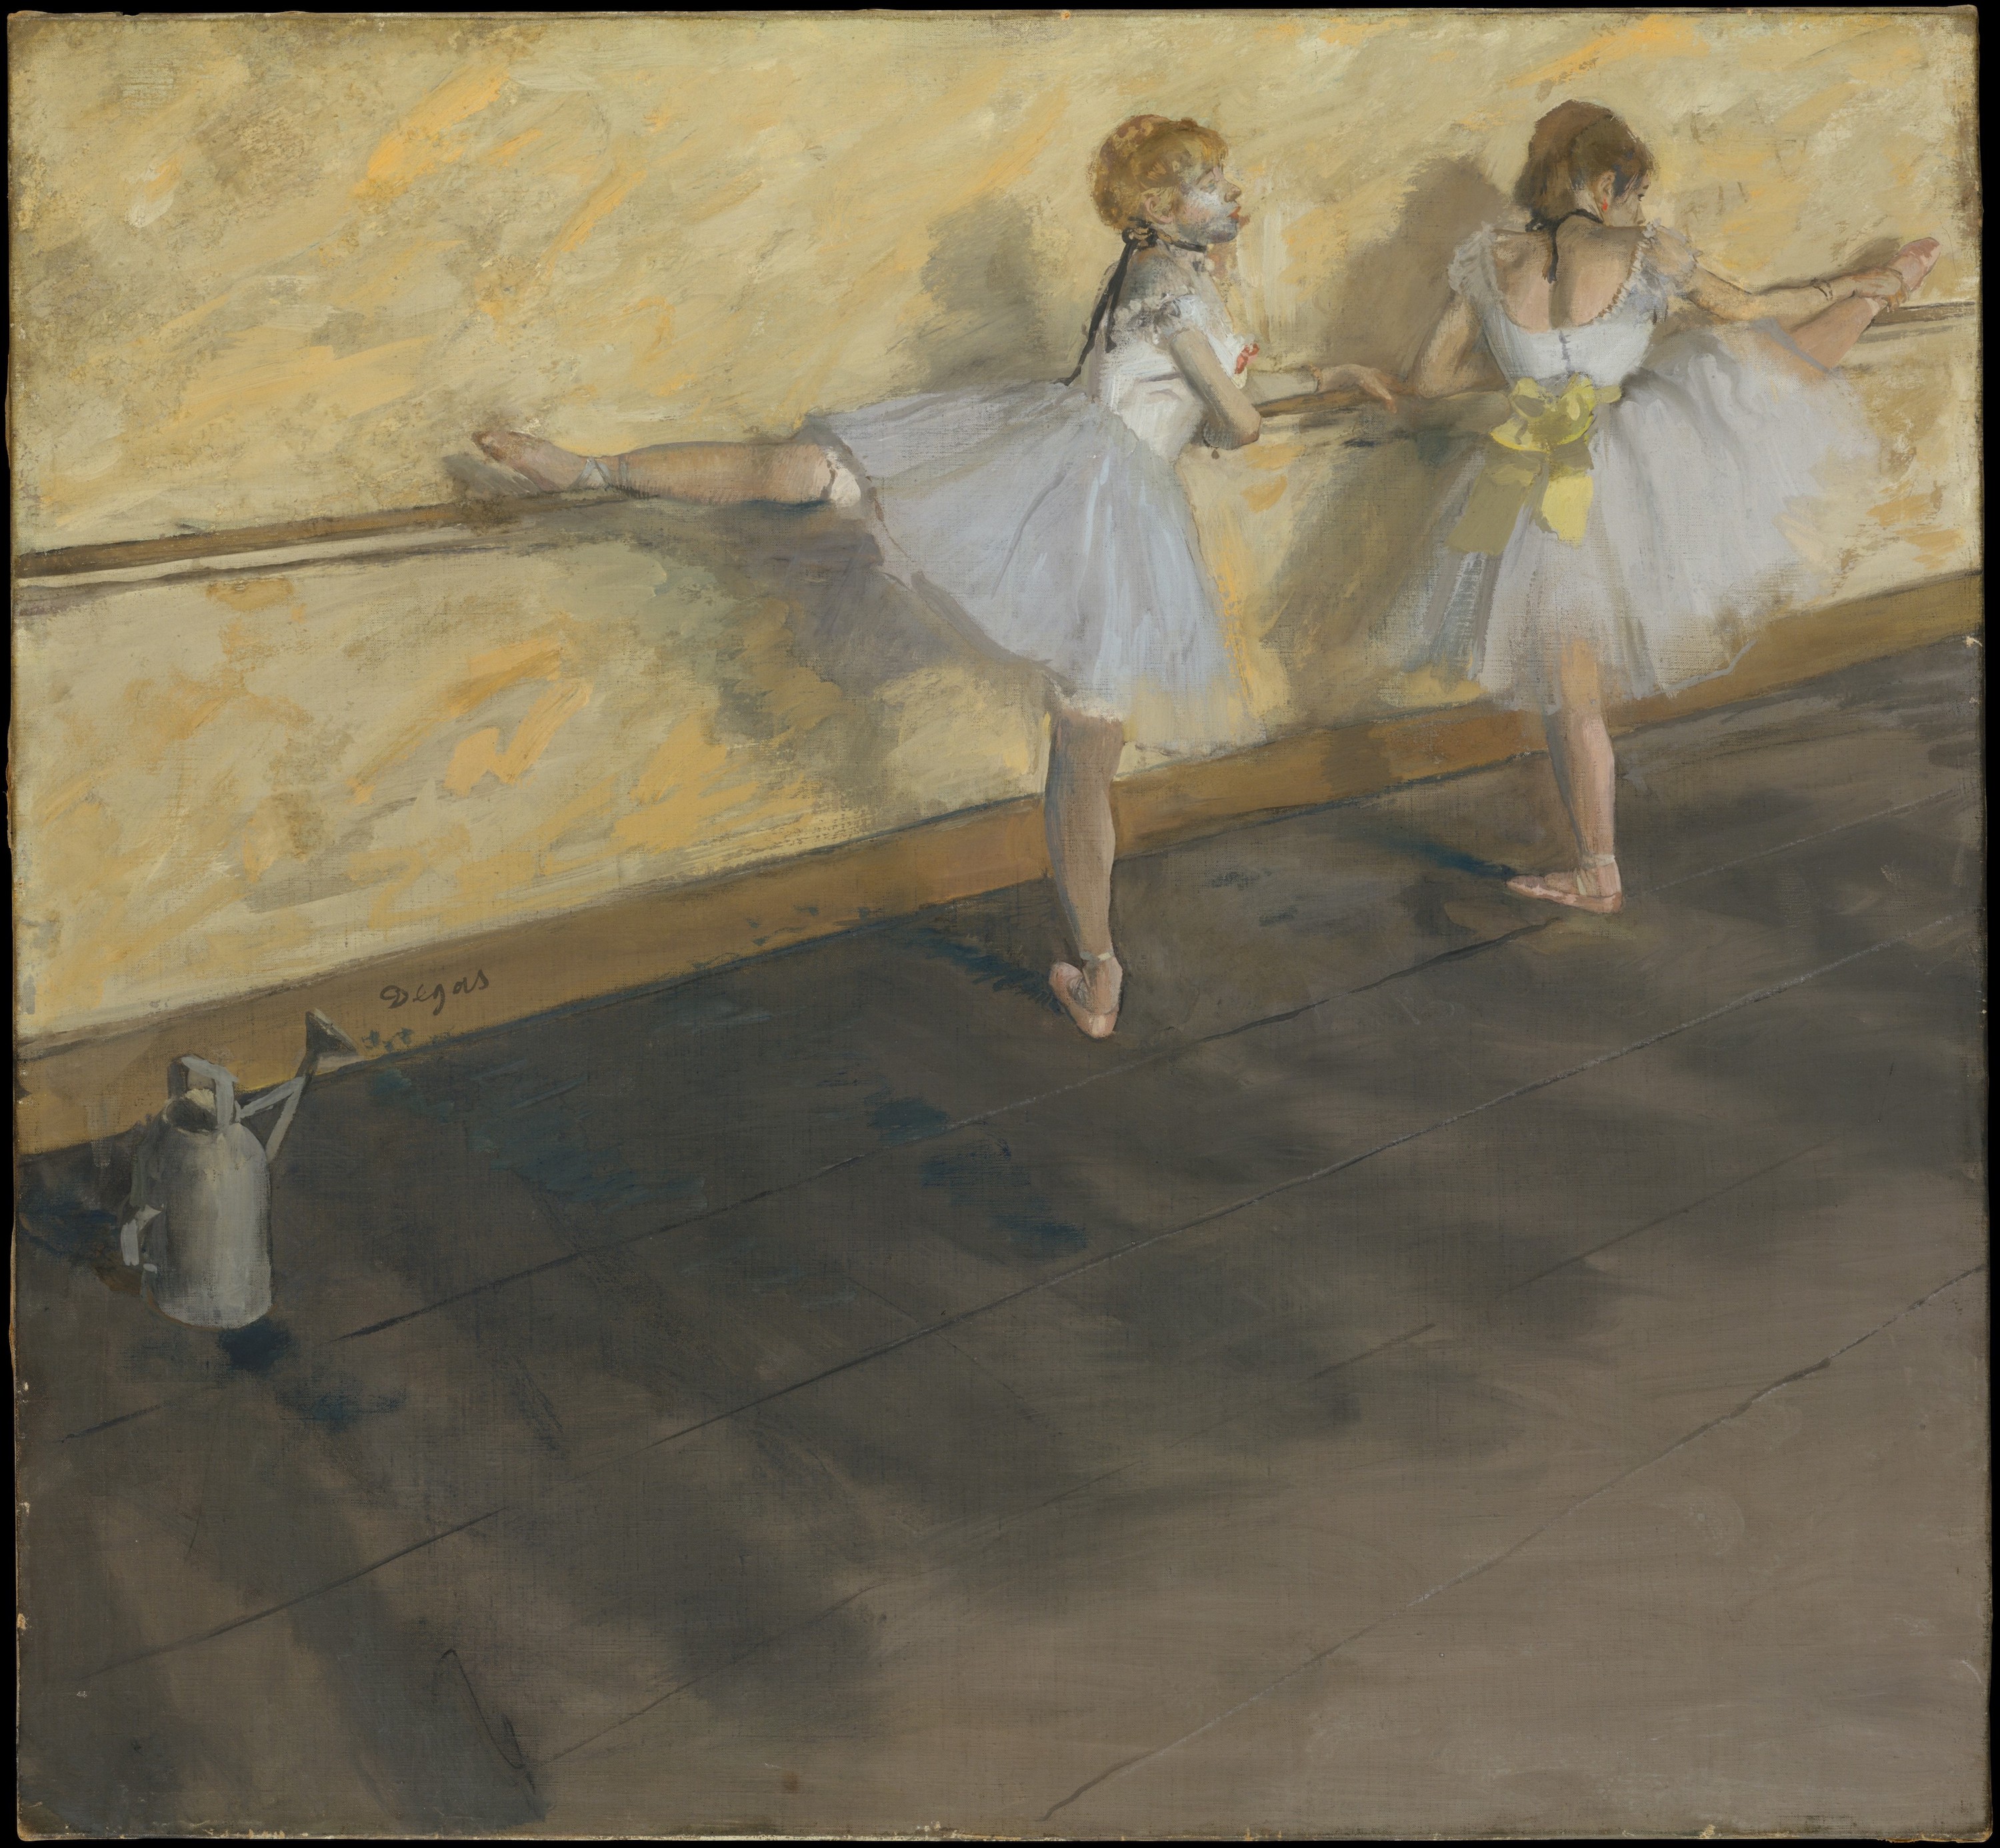 발레 연습하는 무희들 by Edgar Degas - 1877 - 75.6 x 81.3 cm 